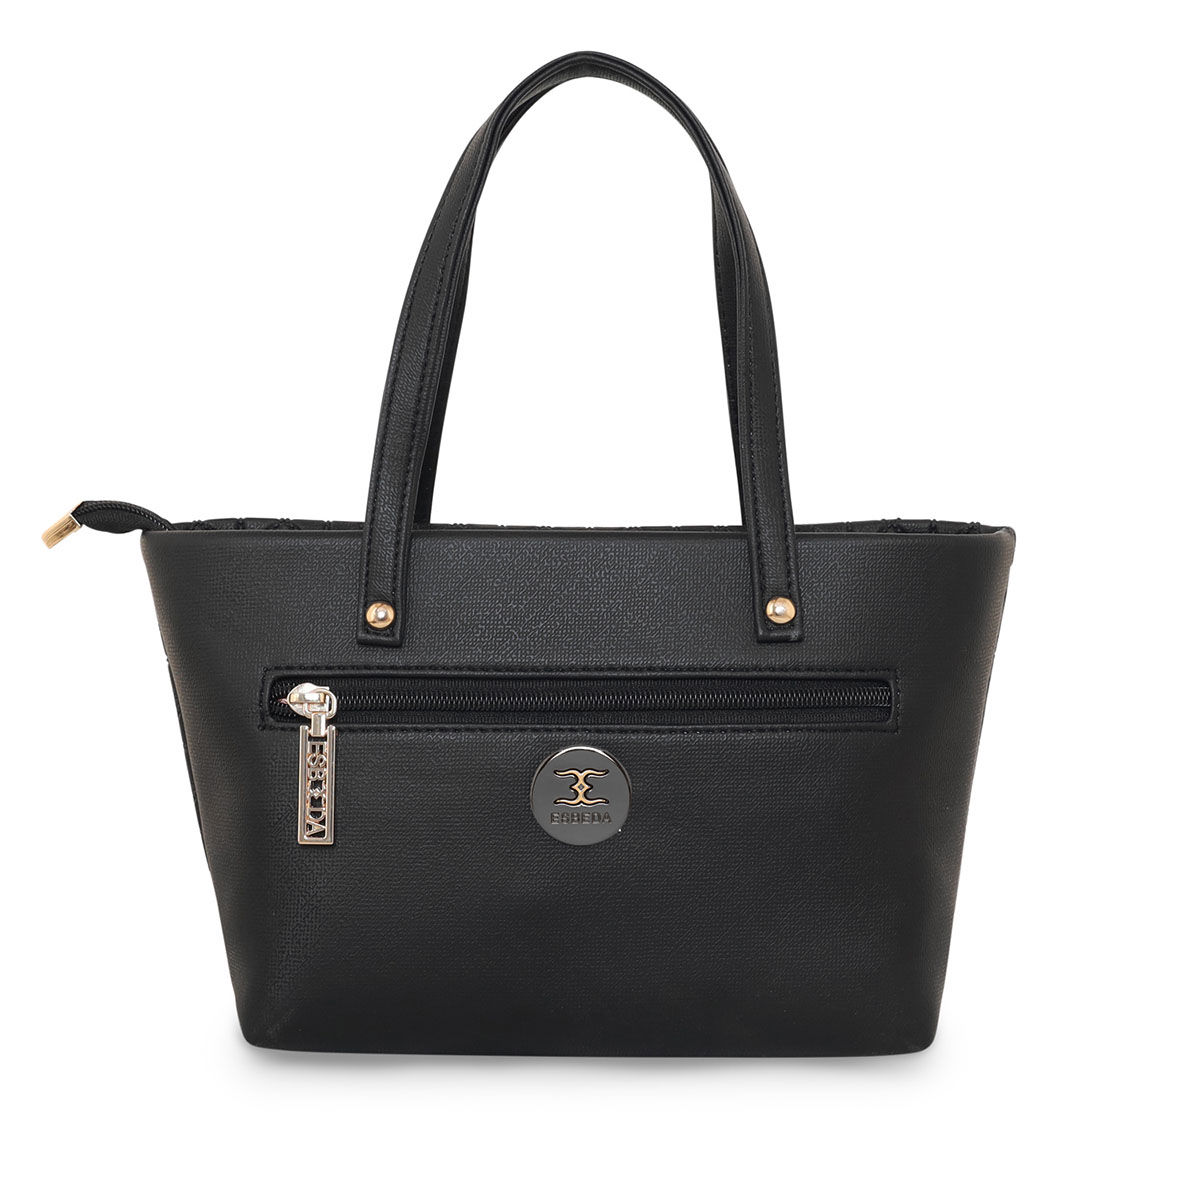 AngelicWhite Esbeda Handbag - Elegant and Trendy Crossbody Bag